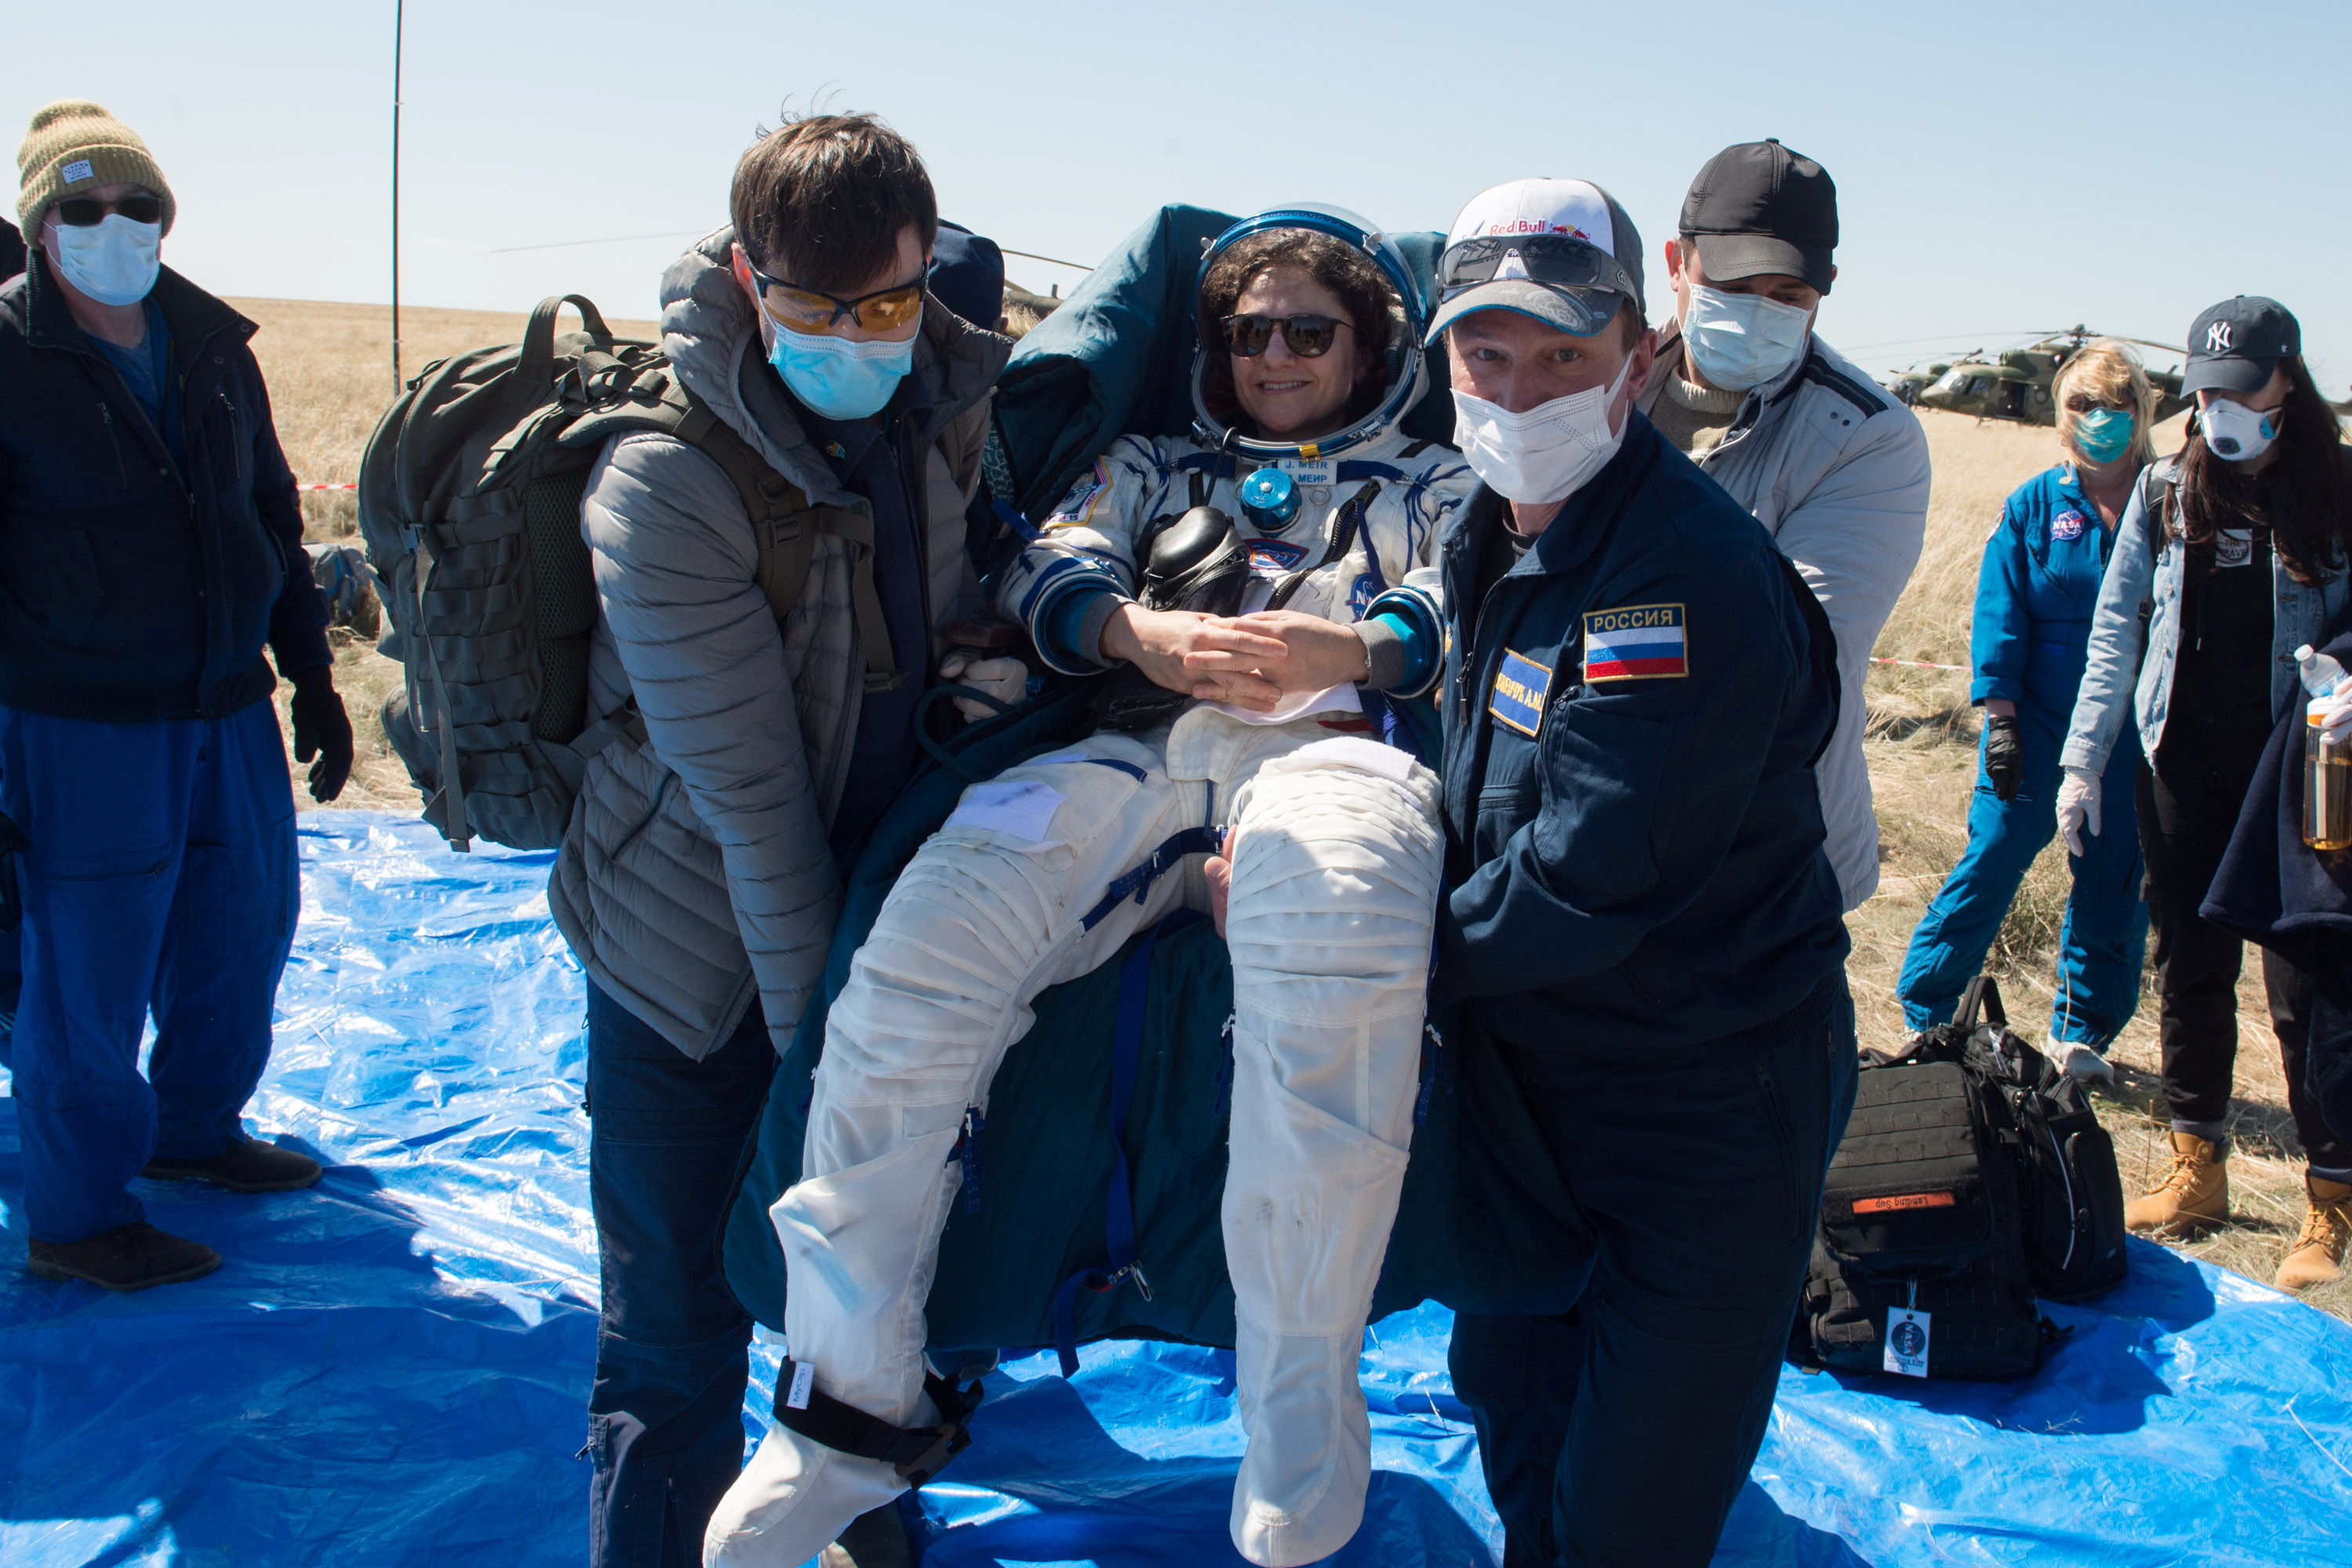 Bodenpersonal transportiert das Besatzungsmitglied der Internationalen Raumstation (ISS), Jessica Meir von der NASA, nachdem die Raumkapsel Sojus MS-15 in einem abgelegenen Gebiet außerhalb Kasachstans gelandet ist, 17. April 2020 (REUTERS)